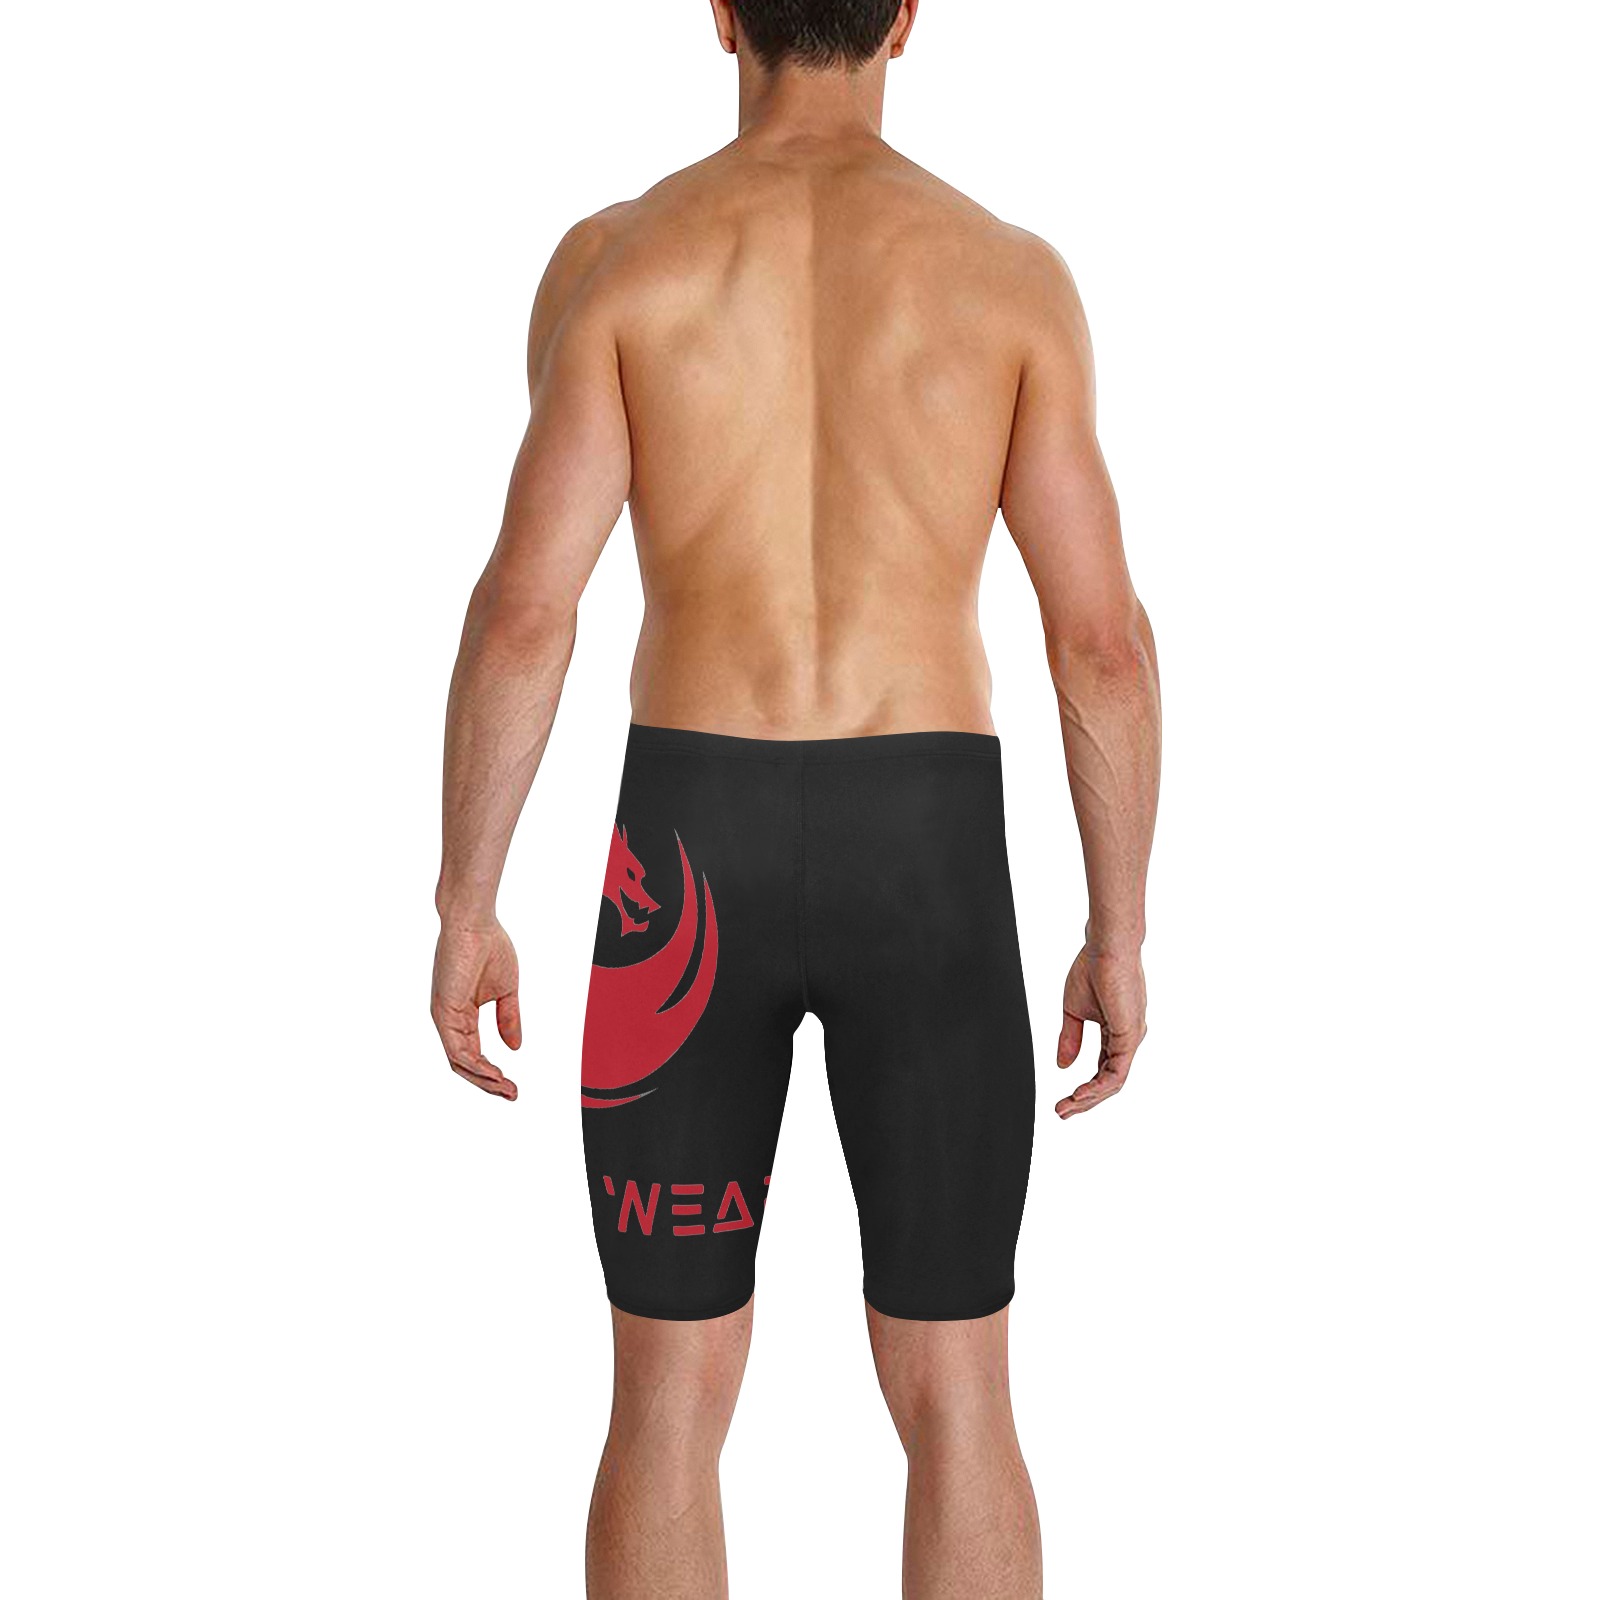 StayPetty swimtrunks Men's Knee Length Swimming Trunks (Model L58)